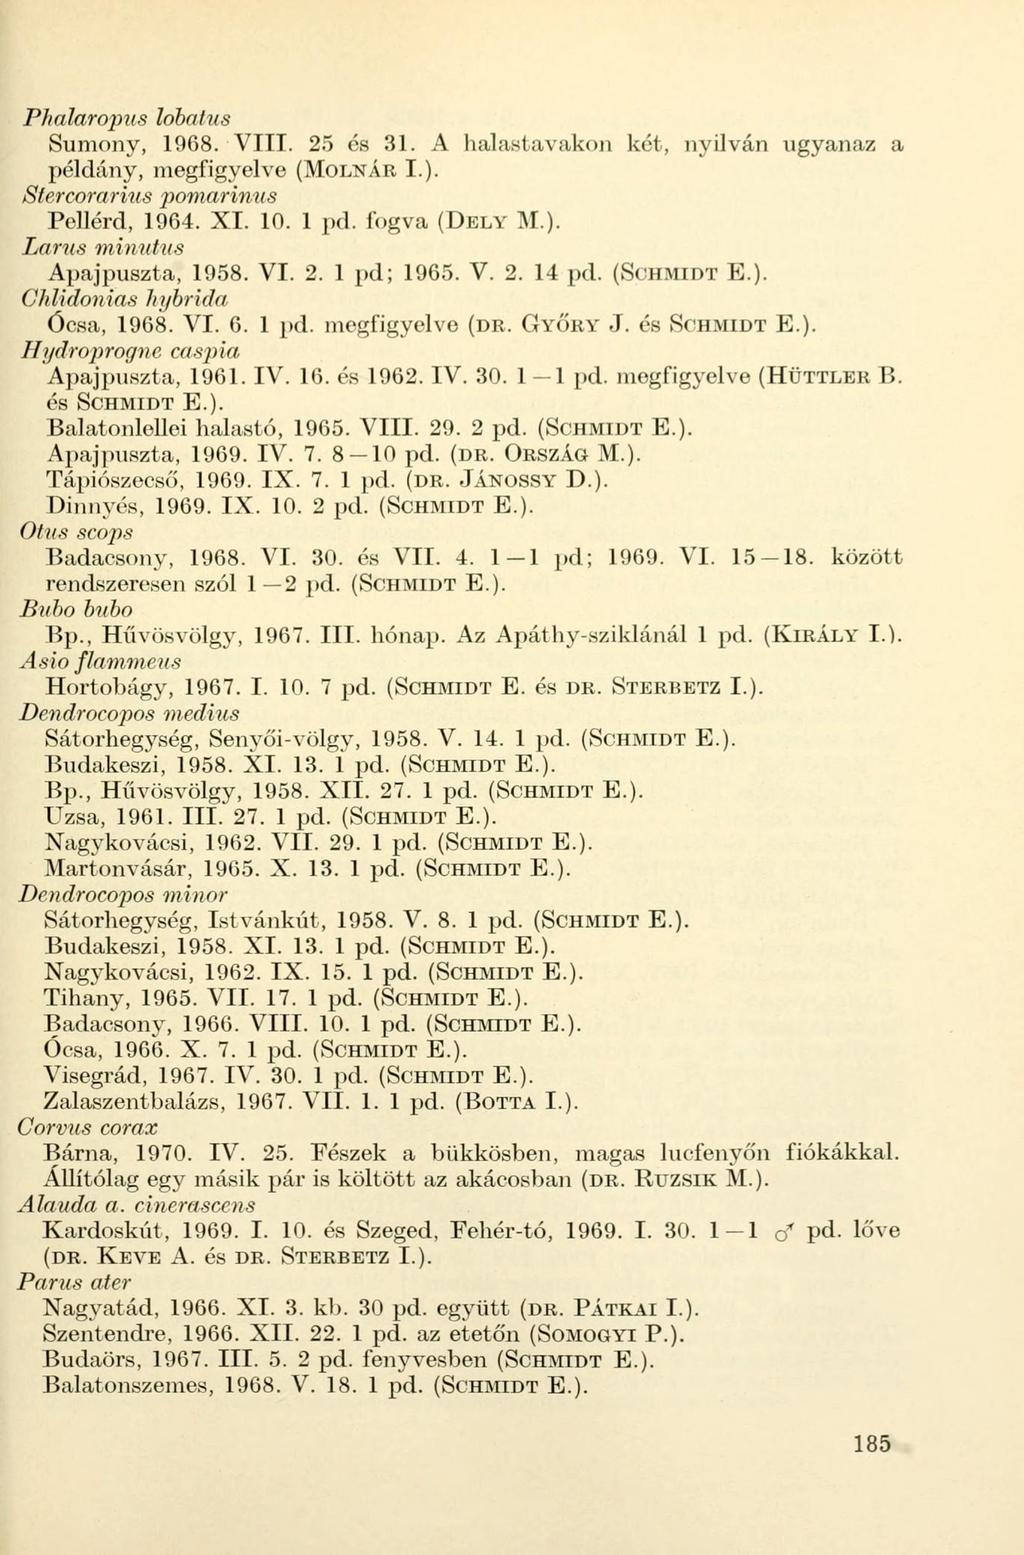 Phalaropus lobatus Sumony, 1968. VIII. 25 és 31. A halastavakon két, nyilván ugyanaz a példány, megfigyelve (MOLNÁR I.). Stercorarms pomarinus Pellérd, 1964. XI. 10. 1 pd. fogva (DELY M.). Larus minutus Apajpuszta, 1958.